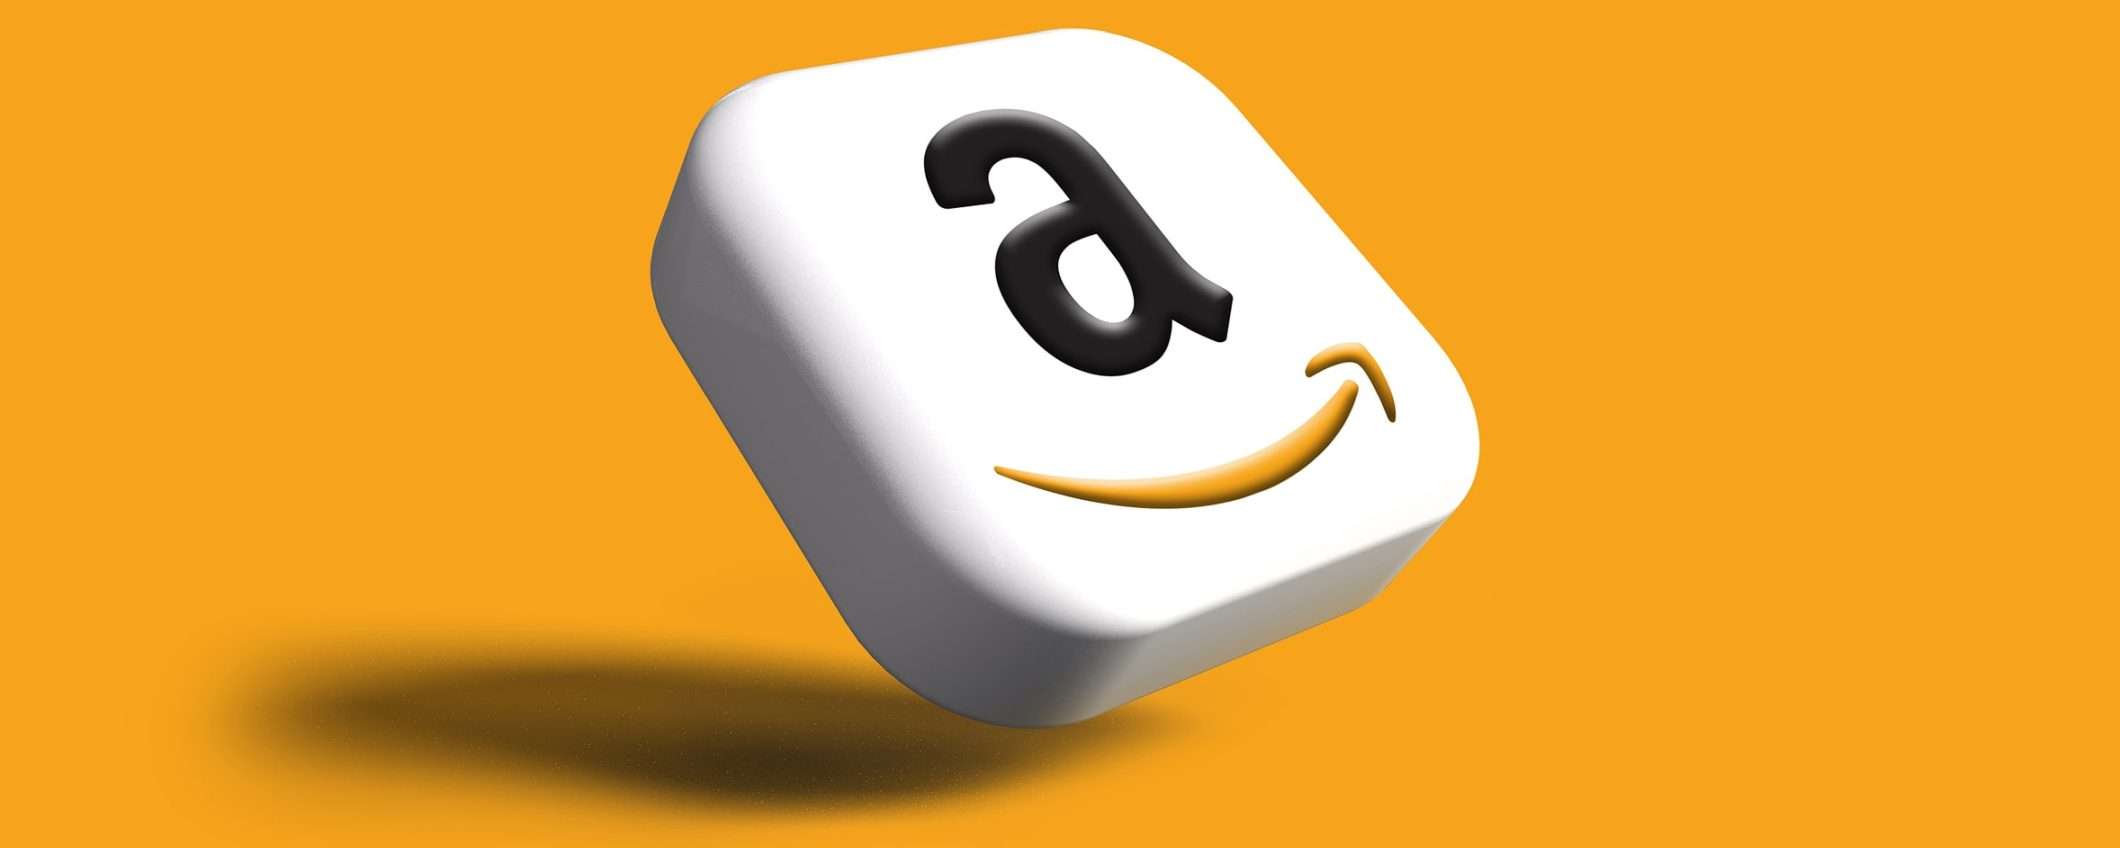 Come ricevere gift card Amazon gratis con Hype